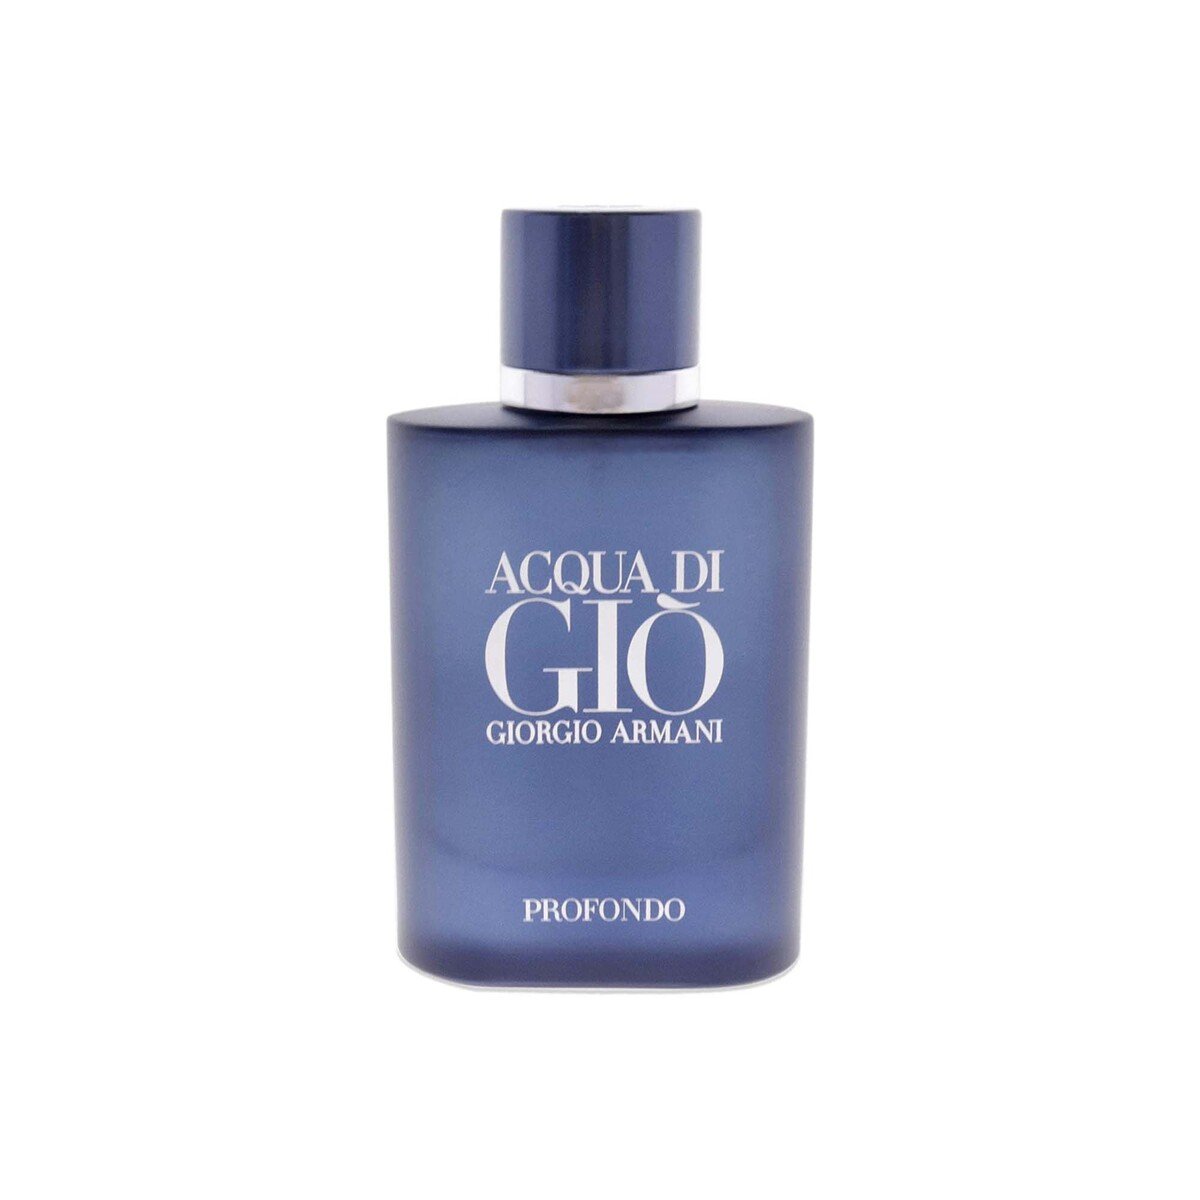 Giorgio Armani Acqua Di Gio Profondo Eau De Parfum For Men, 75ml